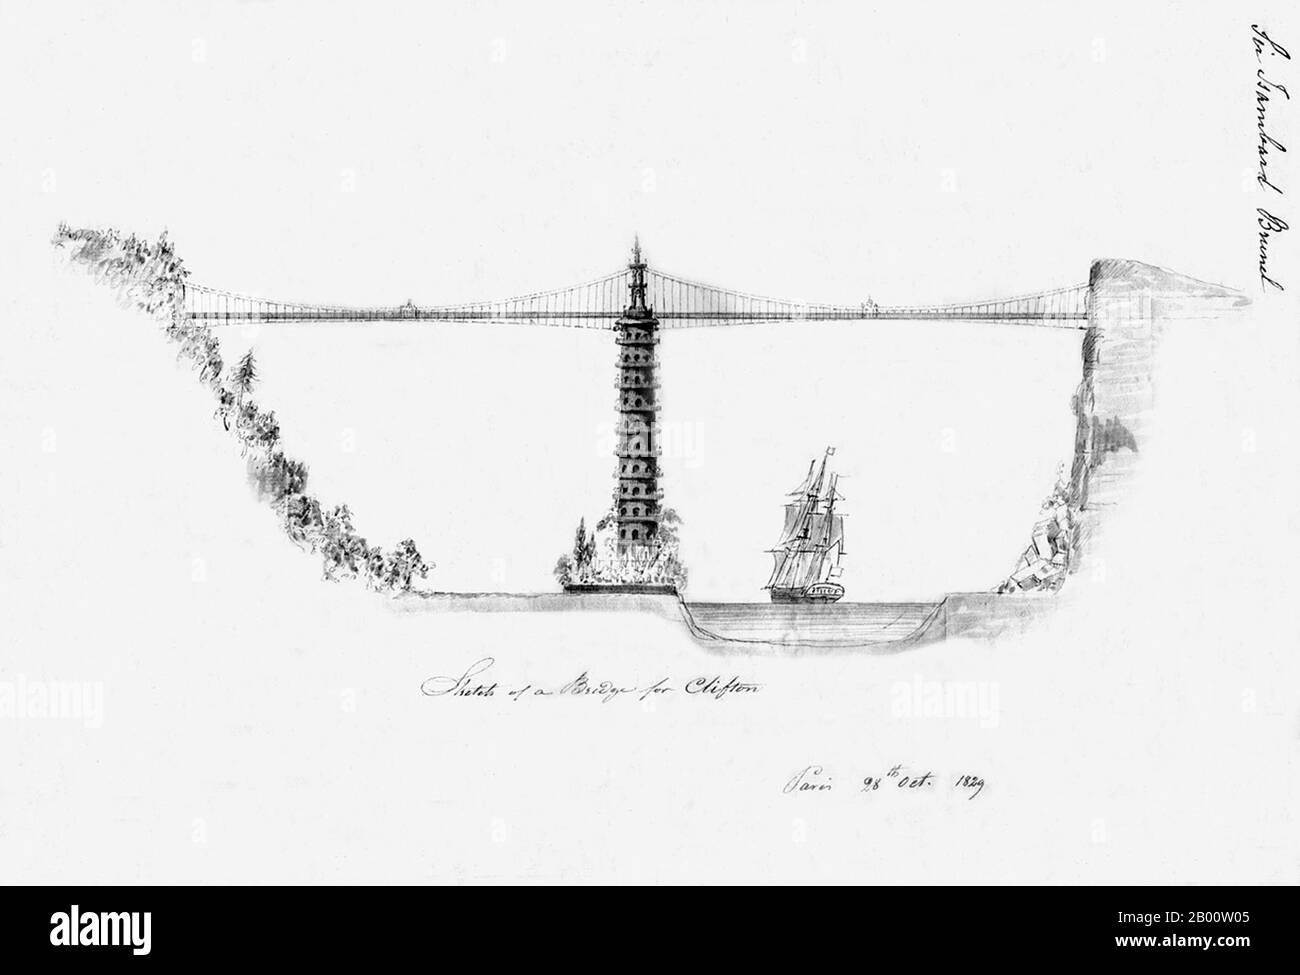 Un design notevole per un ponte 'Chinoiserie' attraverso la gola di Avon a Bristol da Sir Isambard Kingdom Brunel, 1829. Il ponte sospeso di Clifton fu completato nel 1864 dopo il design di Brunel, ma senza la pagoda. Foto Stock